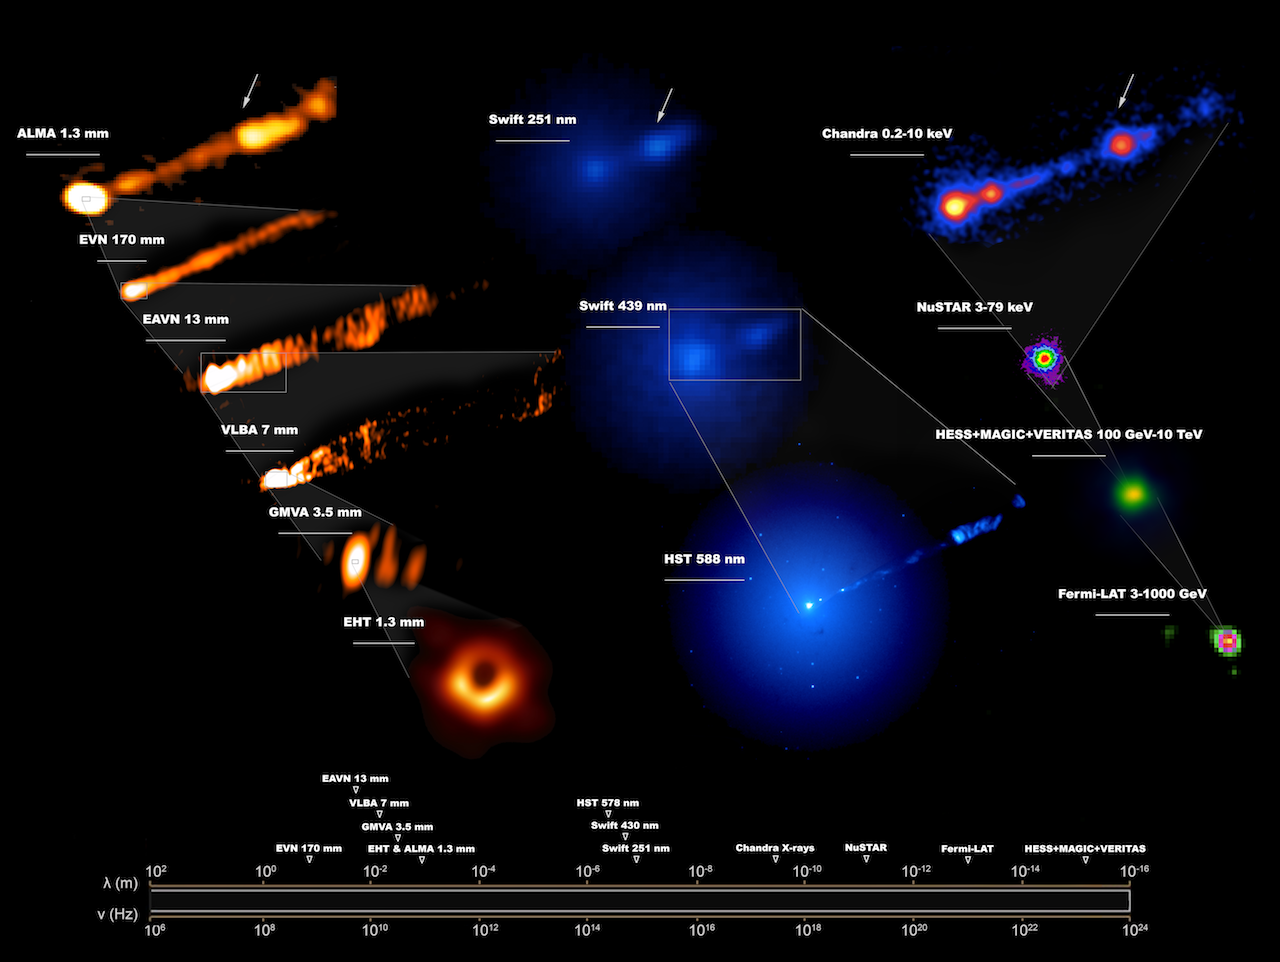 Telescopios se unen en observaciones sin precedentes de famoso agujero negro